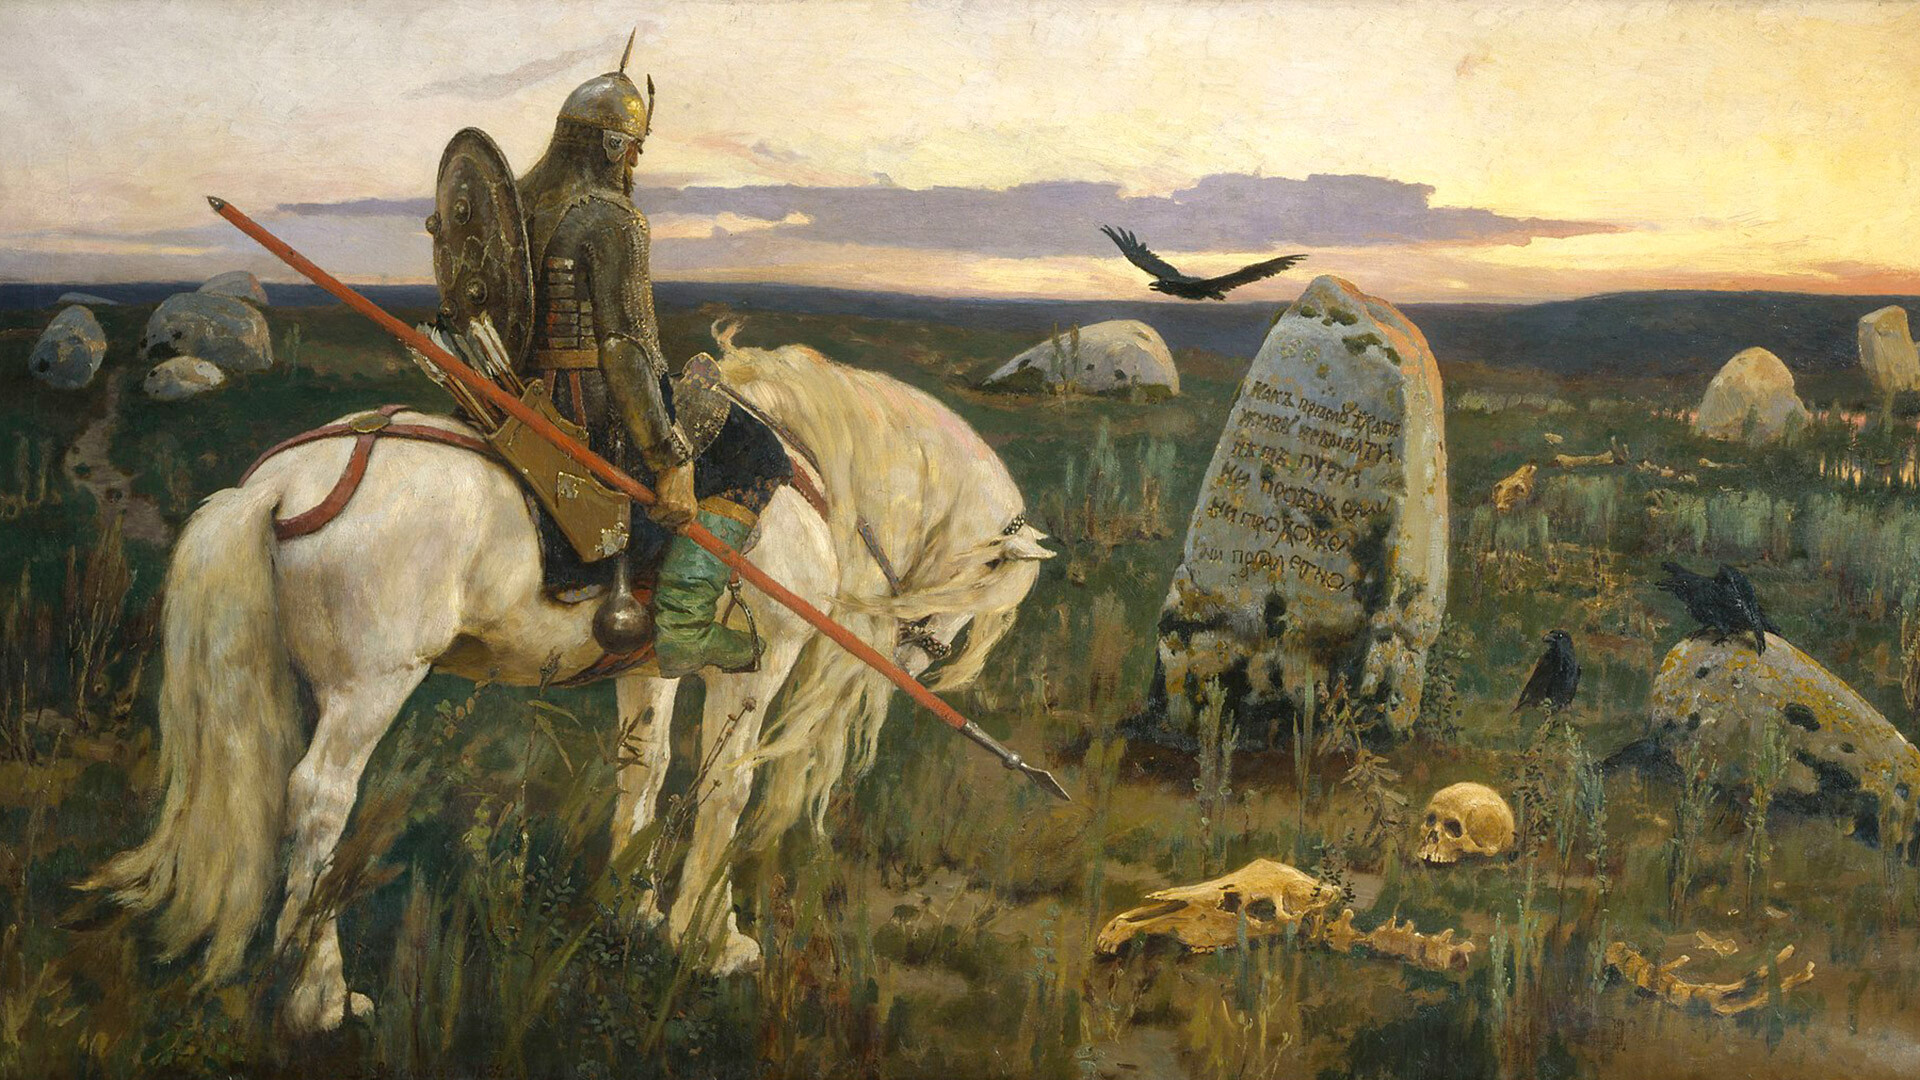 「岐路に立つ騎士」、1878年、ヴィクトル・ヴァスネツォフ